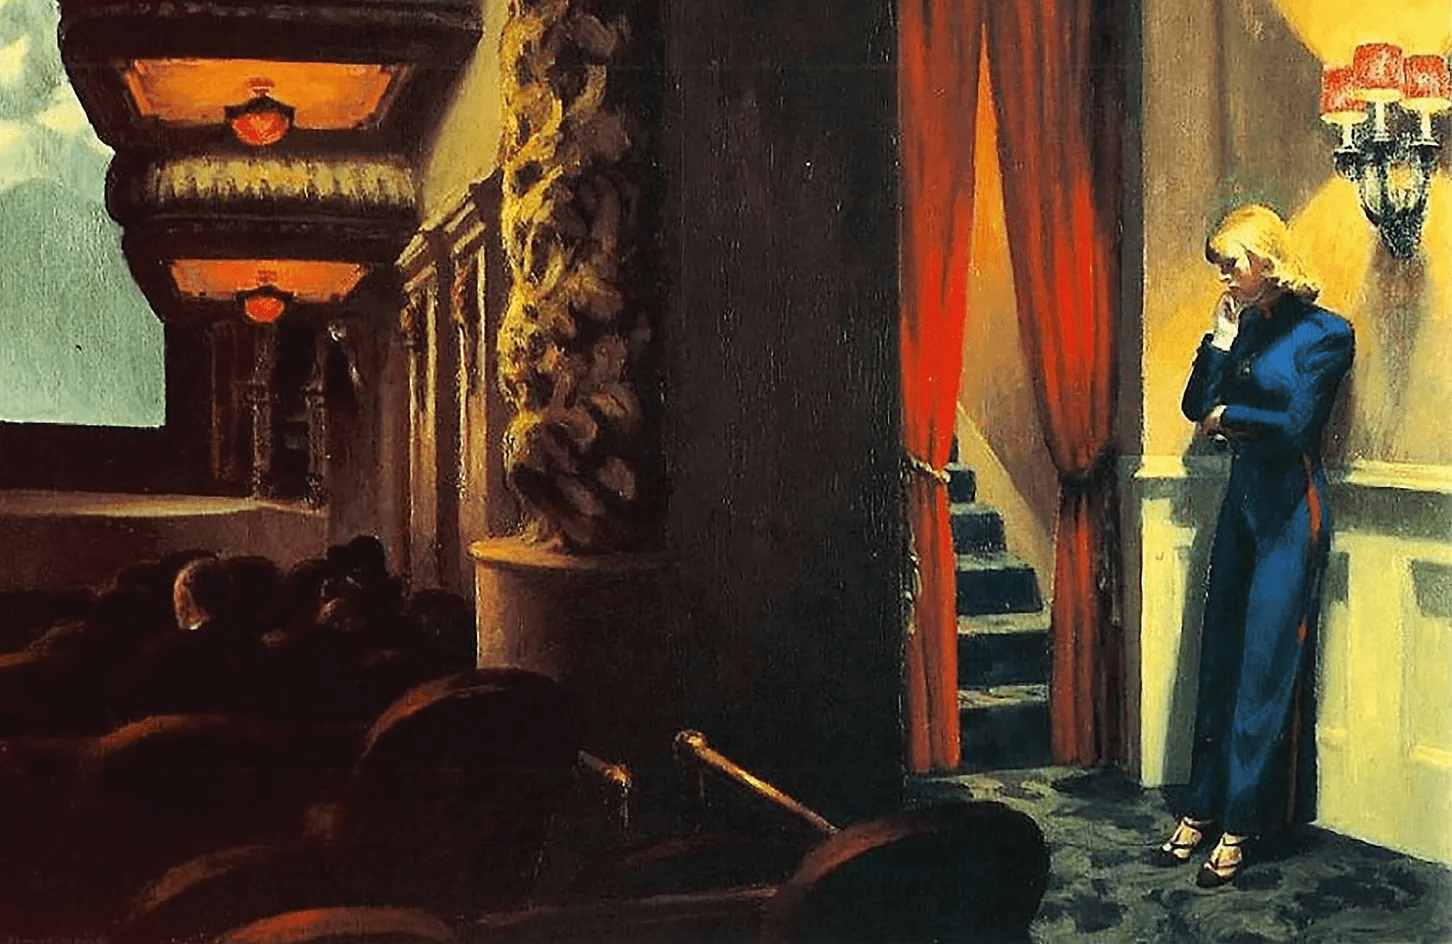 Föreställningen pågår men inte alla deltar i den. Målning av Edward Hopper (1882–1967). Foto: Public Domain